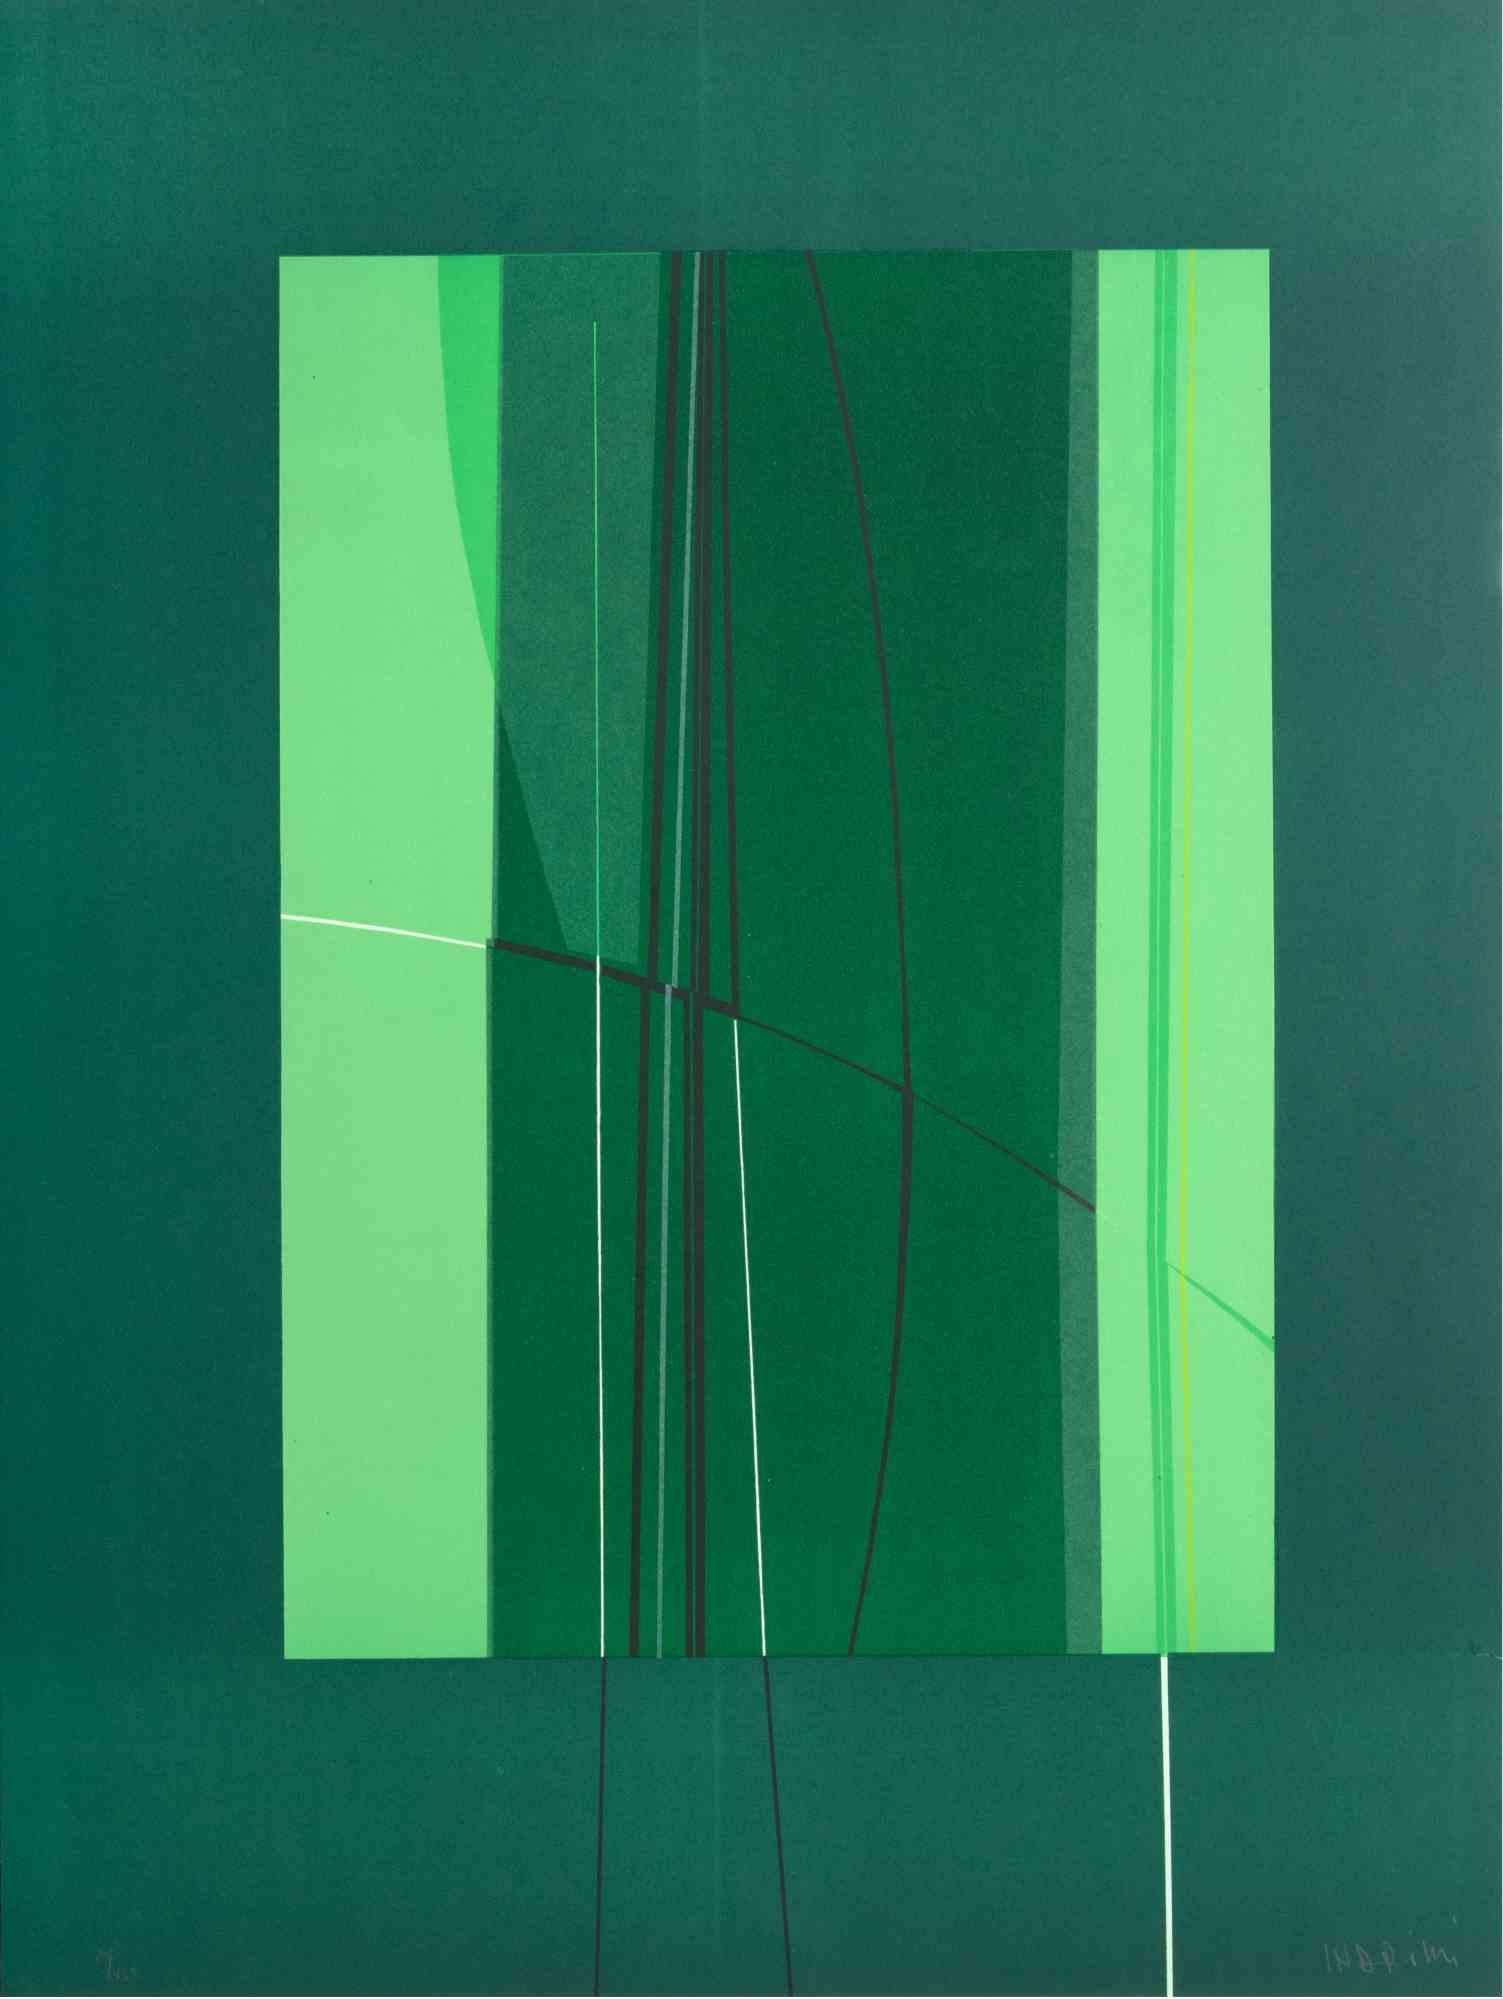 Green ist ein zeitgenössisches Kunstwerk von Lorenzo Indrimi aus den 1970er Jahren.

Gemischtfarbige Lithographie.

Am unteren Rand handsigniert und datiert.

Auflage von 20/150.